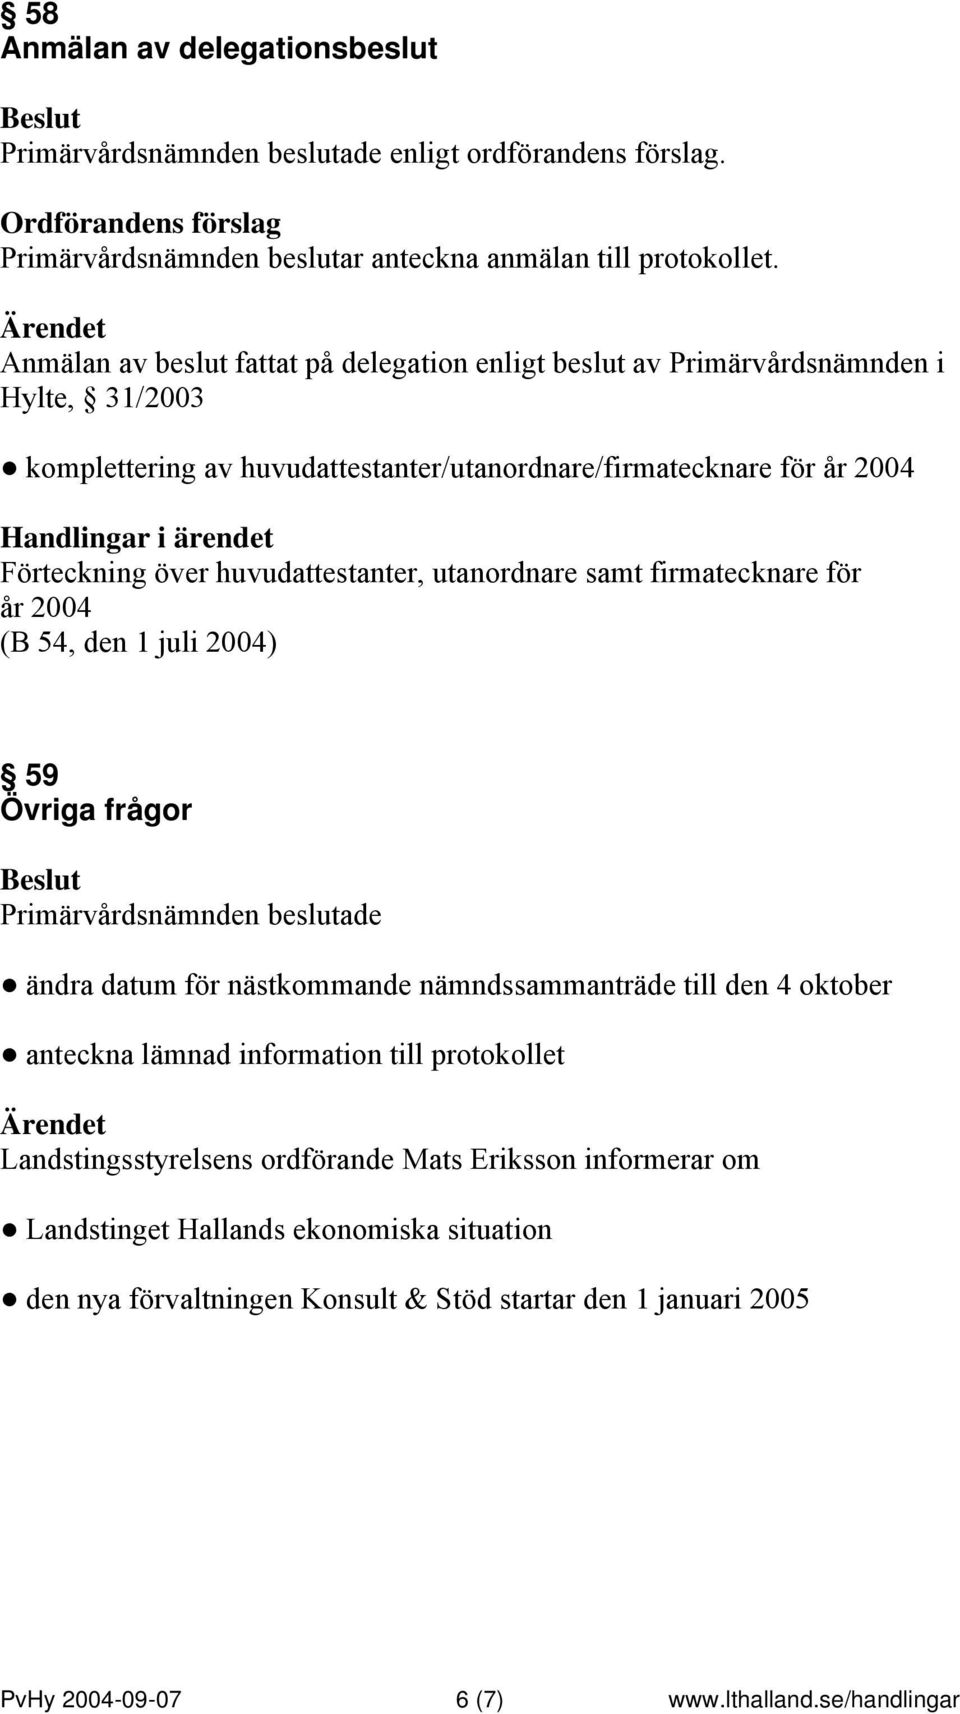 Förteckning över huvudattestanter, utanordnare samt firmatecknare för år 2004 (B 54, den 1 juli 2004) 59 Övriga frågor ändra datum för nästkommande nämndssammanträde till den 4 oktober